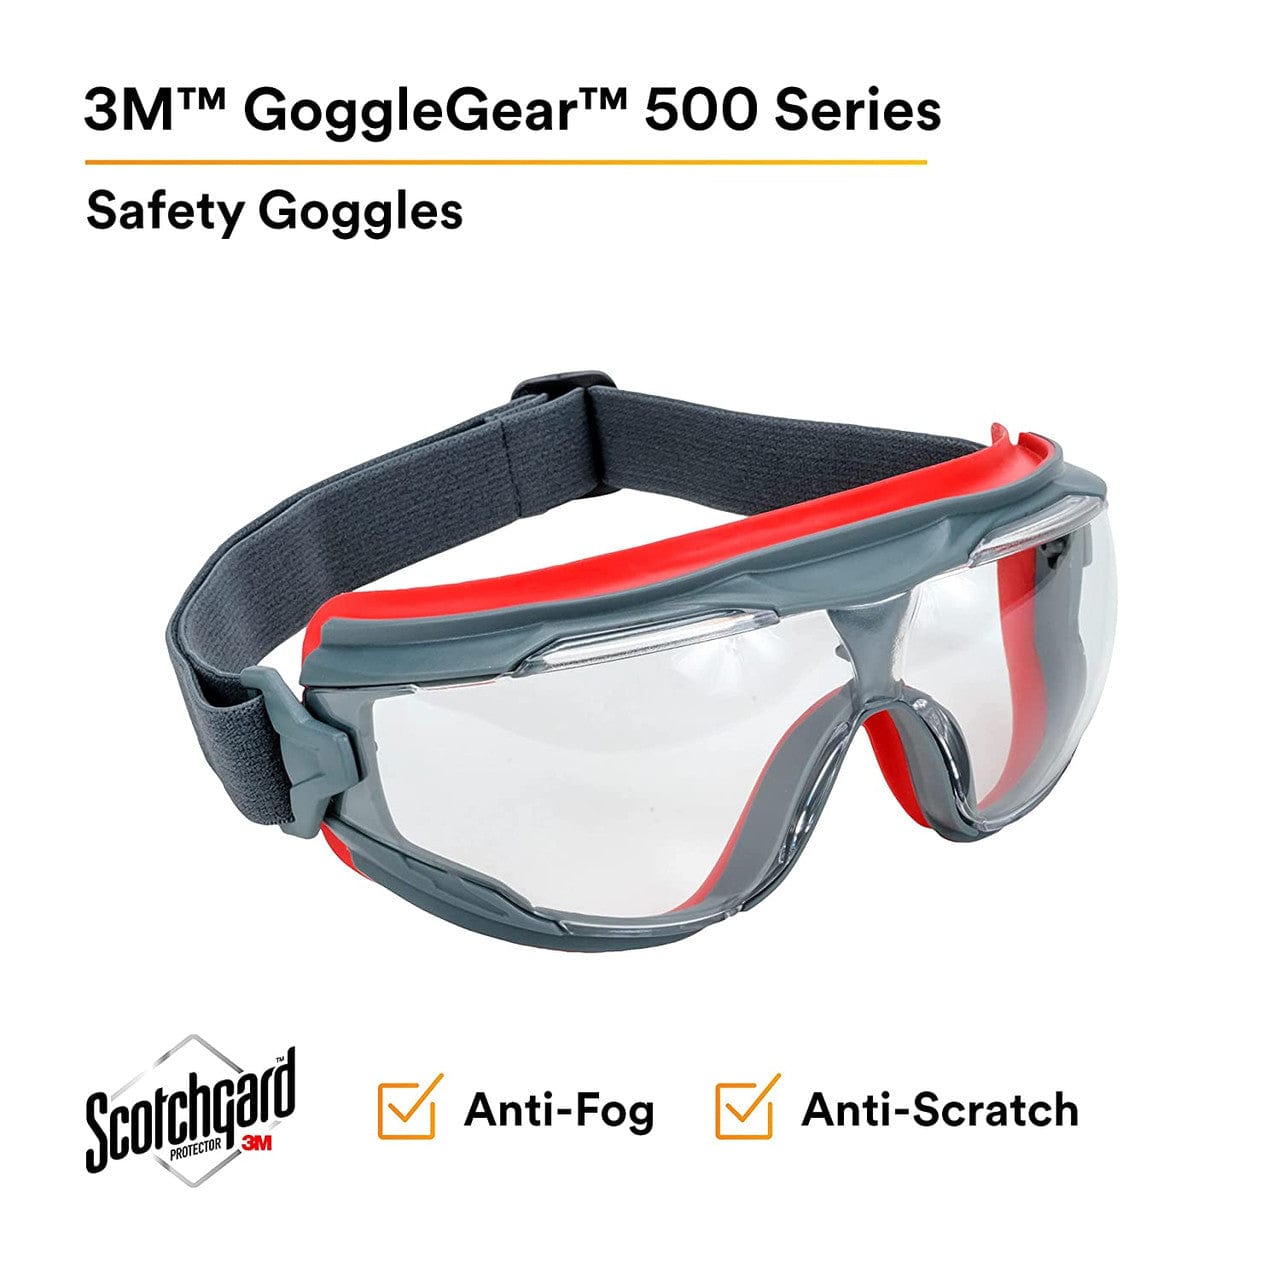 3M GoggleGear 500 GG501SGAF Lens Features